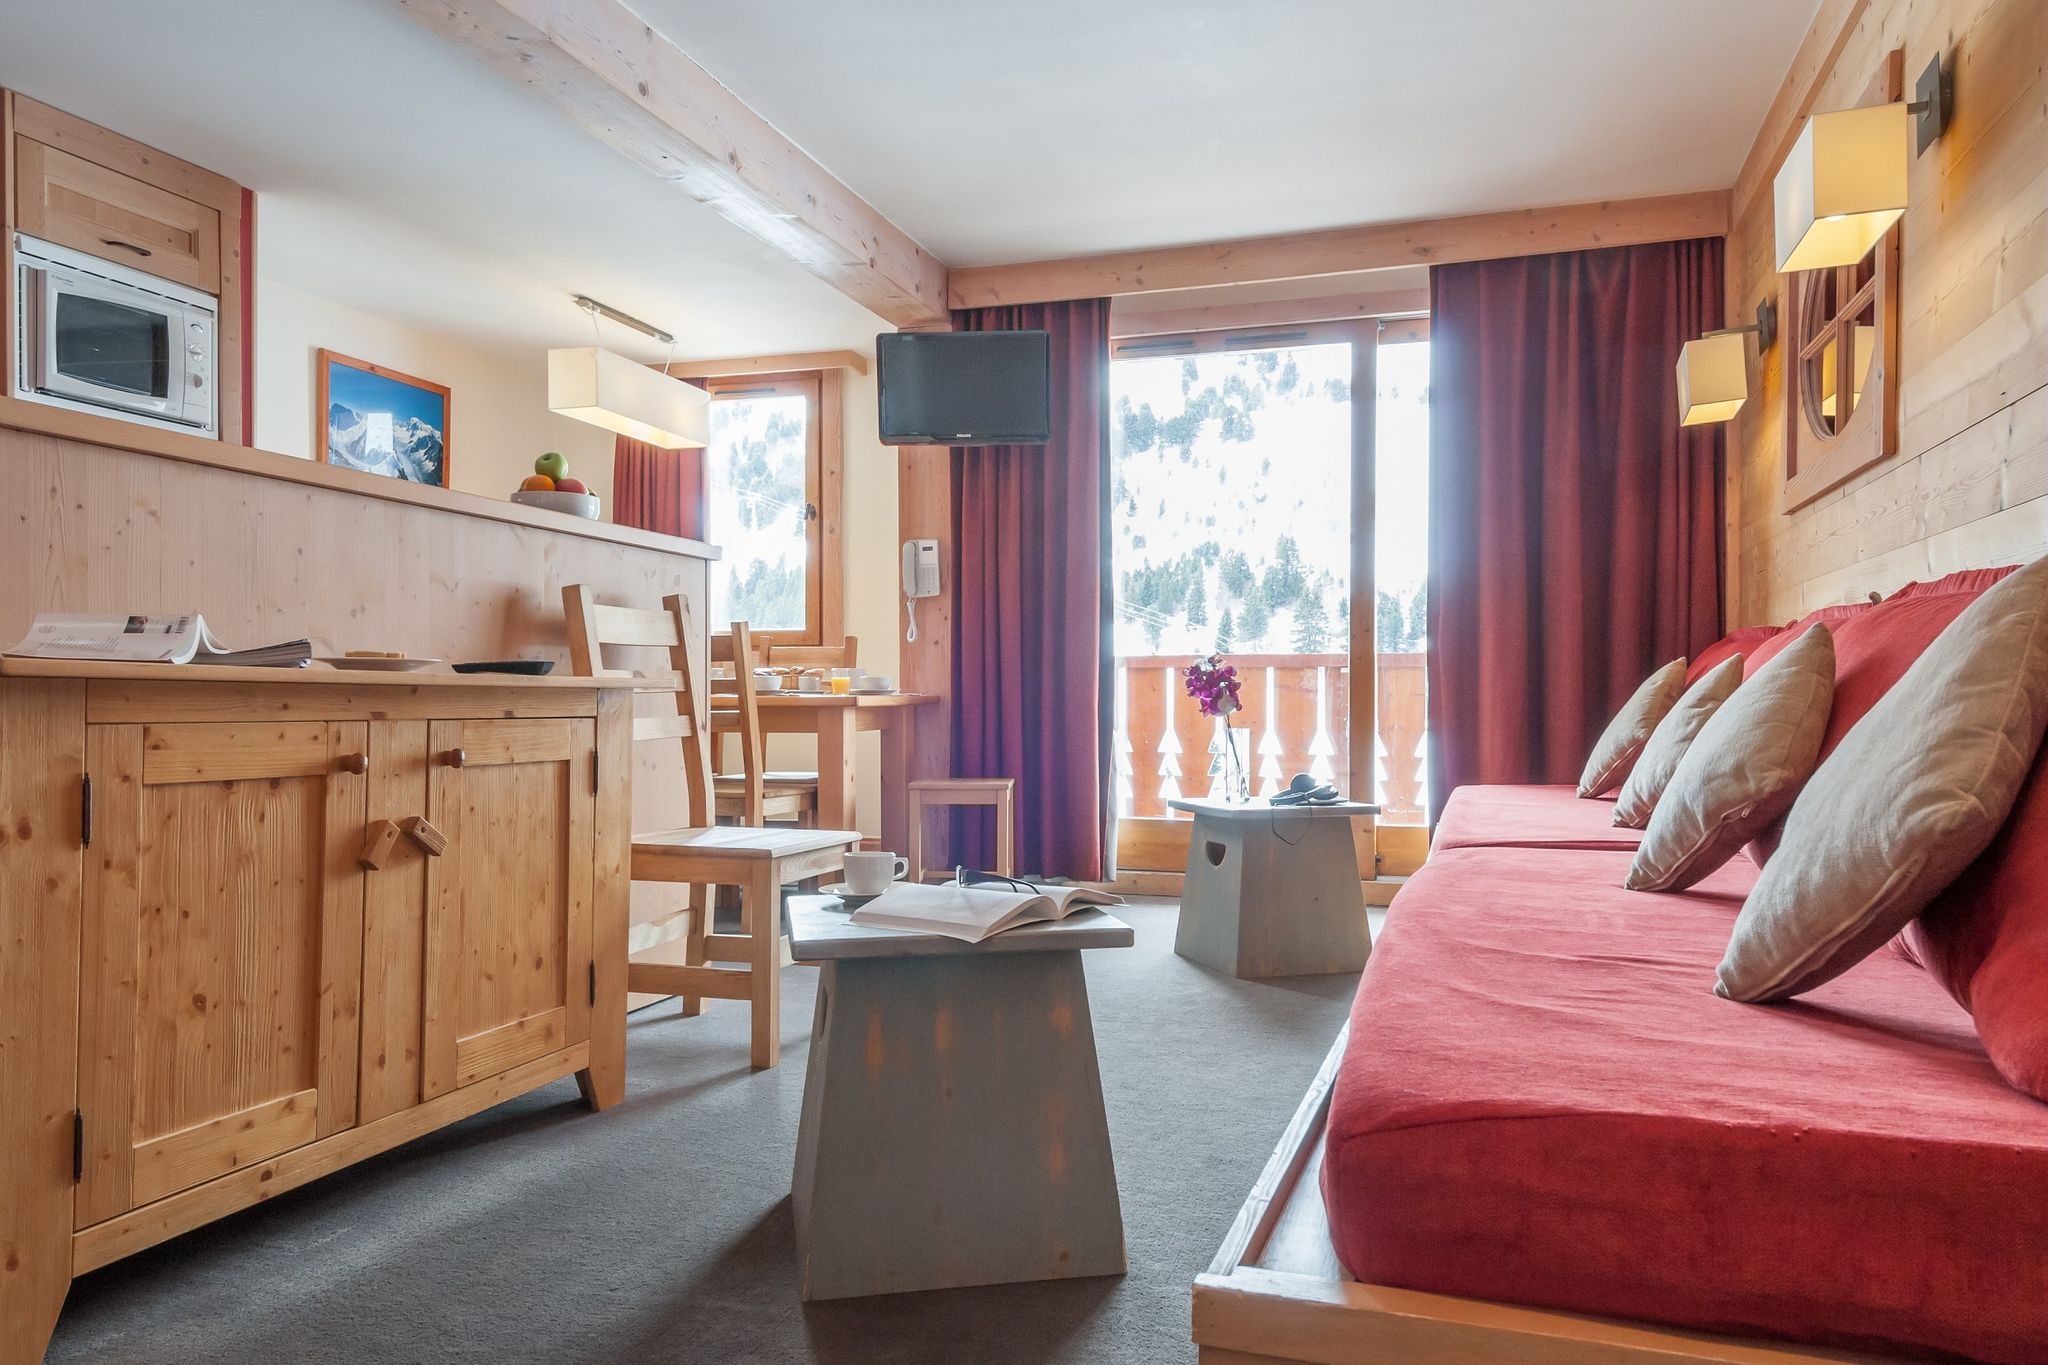 Appartements confortables dans une belle résidence, avec accès direct aux pistes de ski
